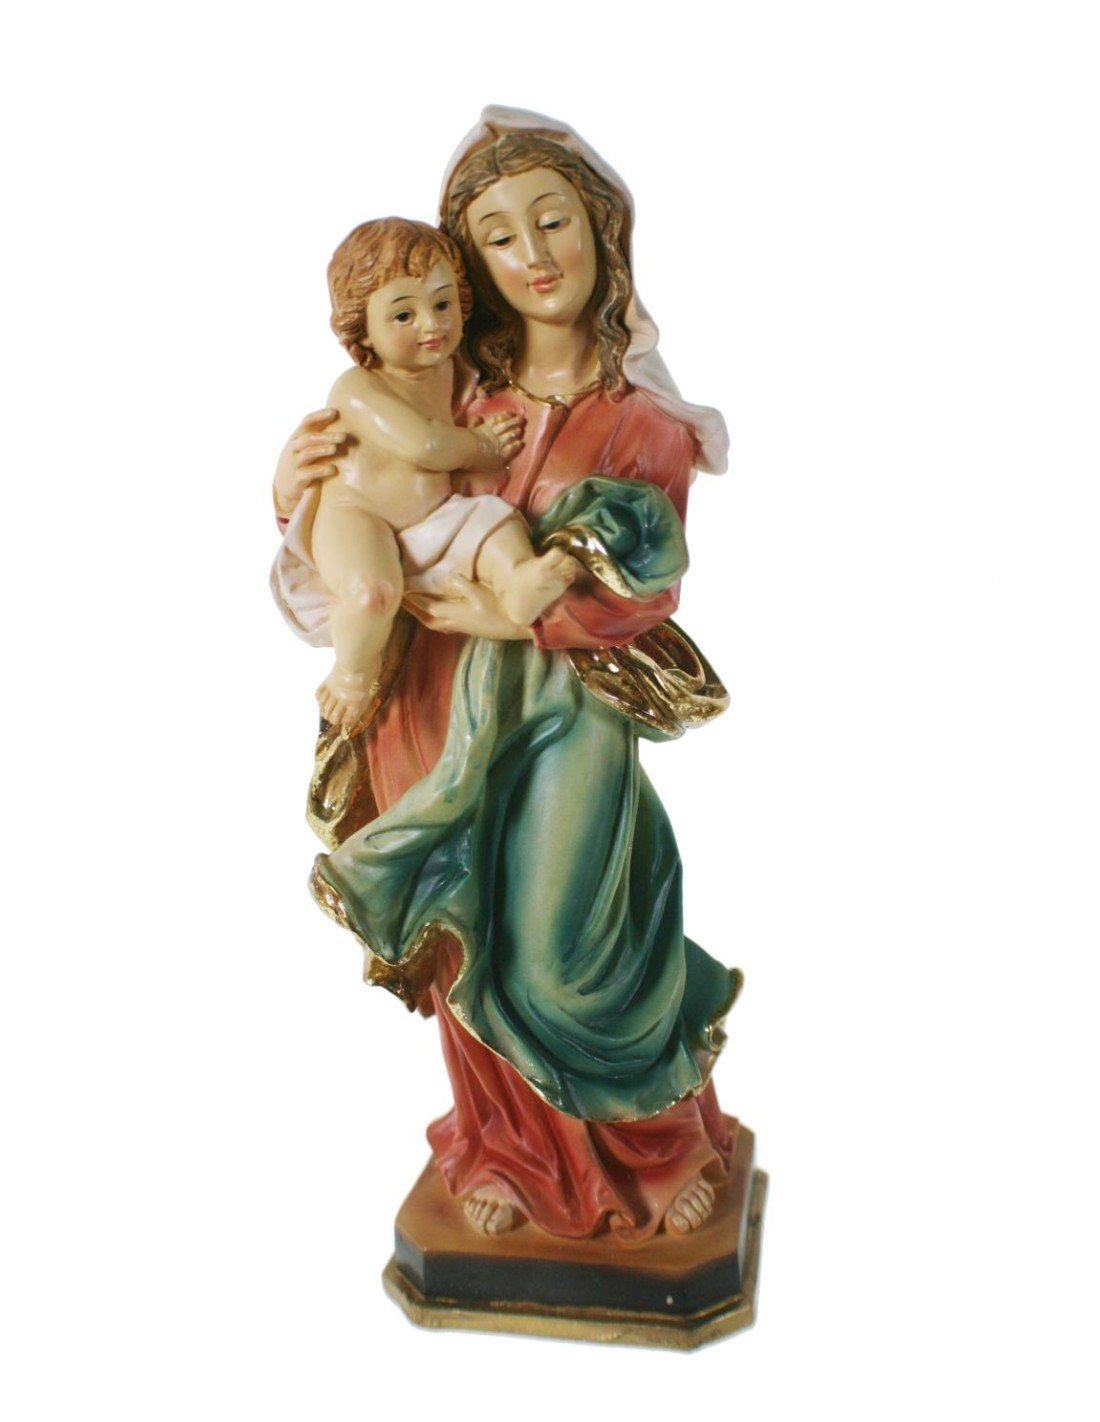 Figura Virgen con Niño o Madonna con niño Jesús en brazos estatua religiosa pintada a mano decoración hogar